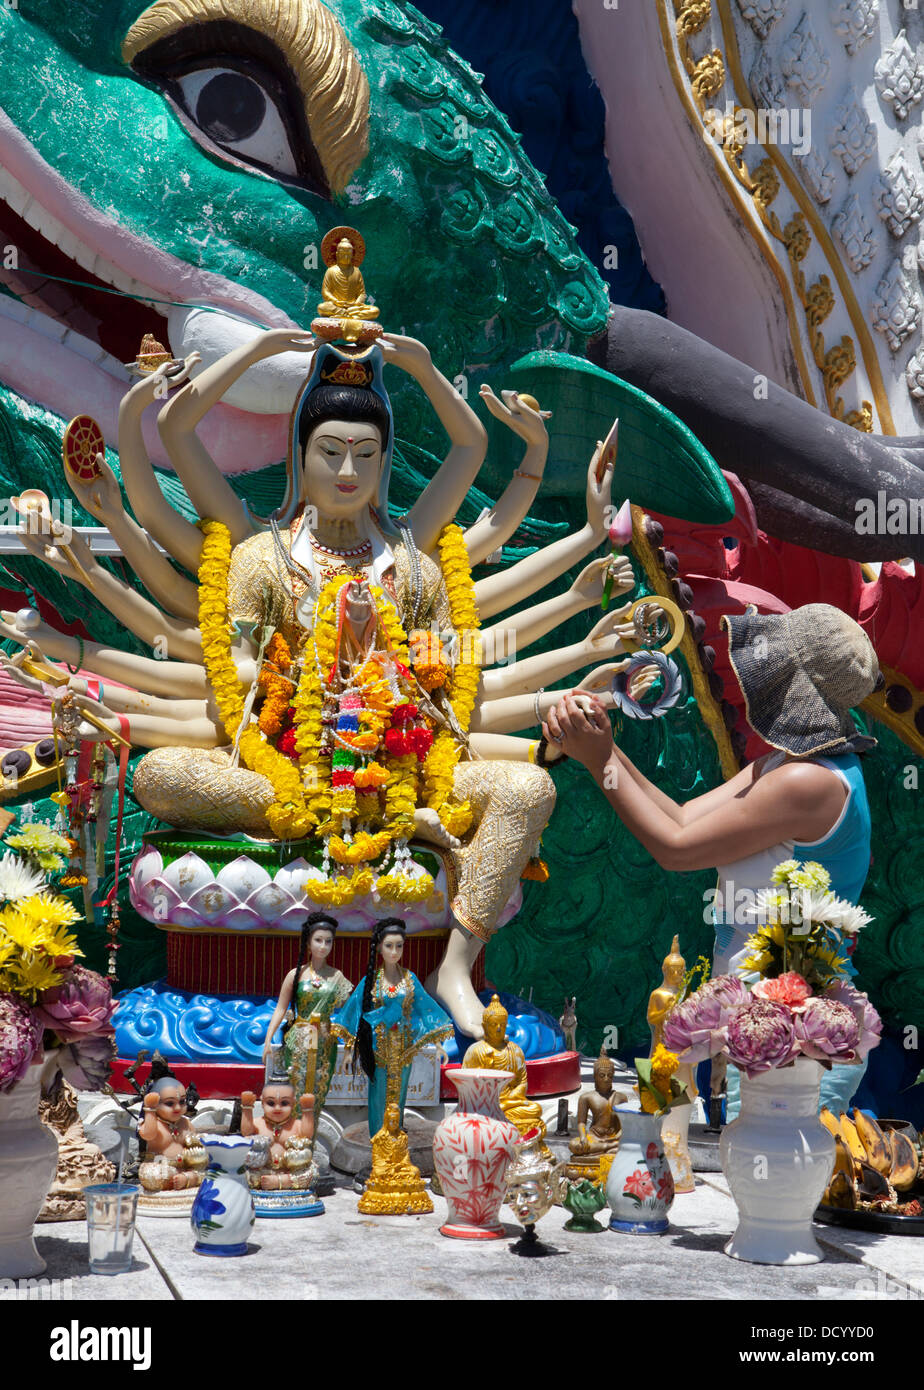 Una estatua de Buda en Wat Plai Laem en Ko Samui Island en el Golfo de Tailandia. Foto de stock